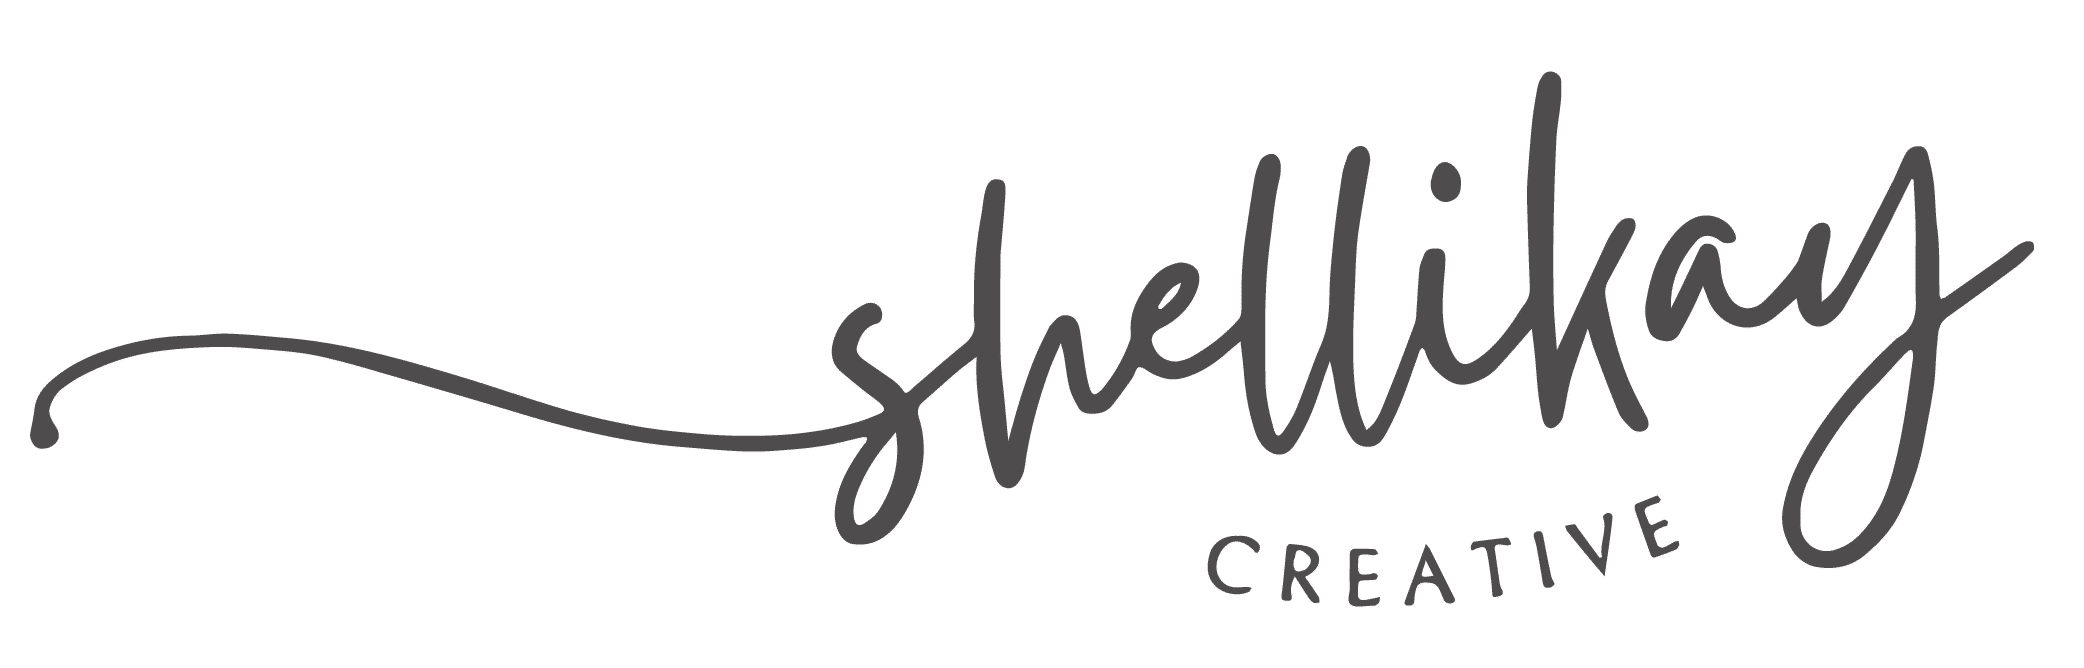 Shelli Kay Creative Logo Gray